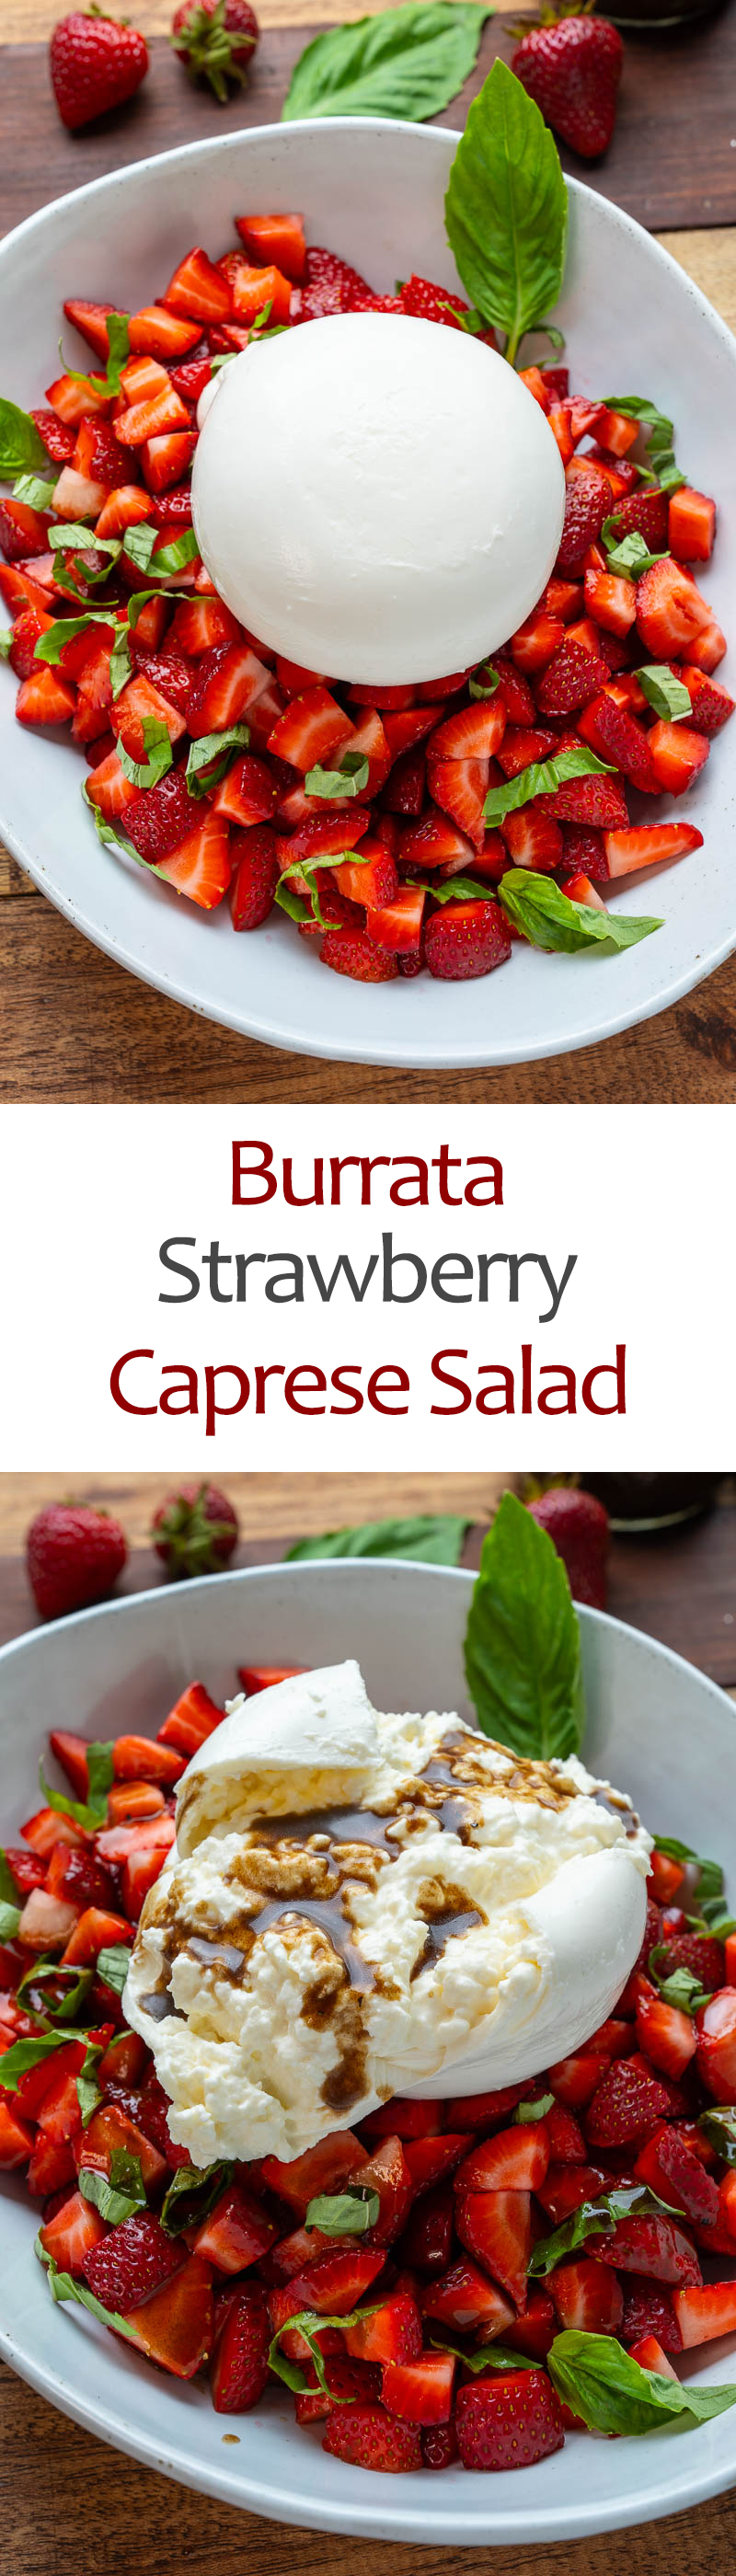 Burrata Strawberry Caprese Salad